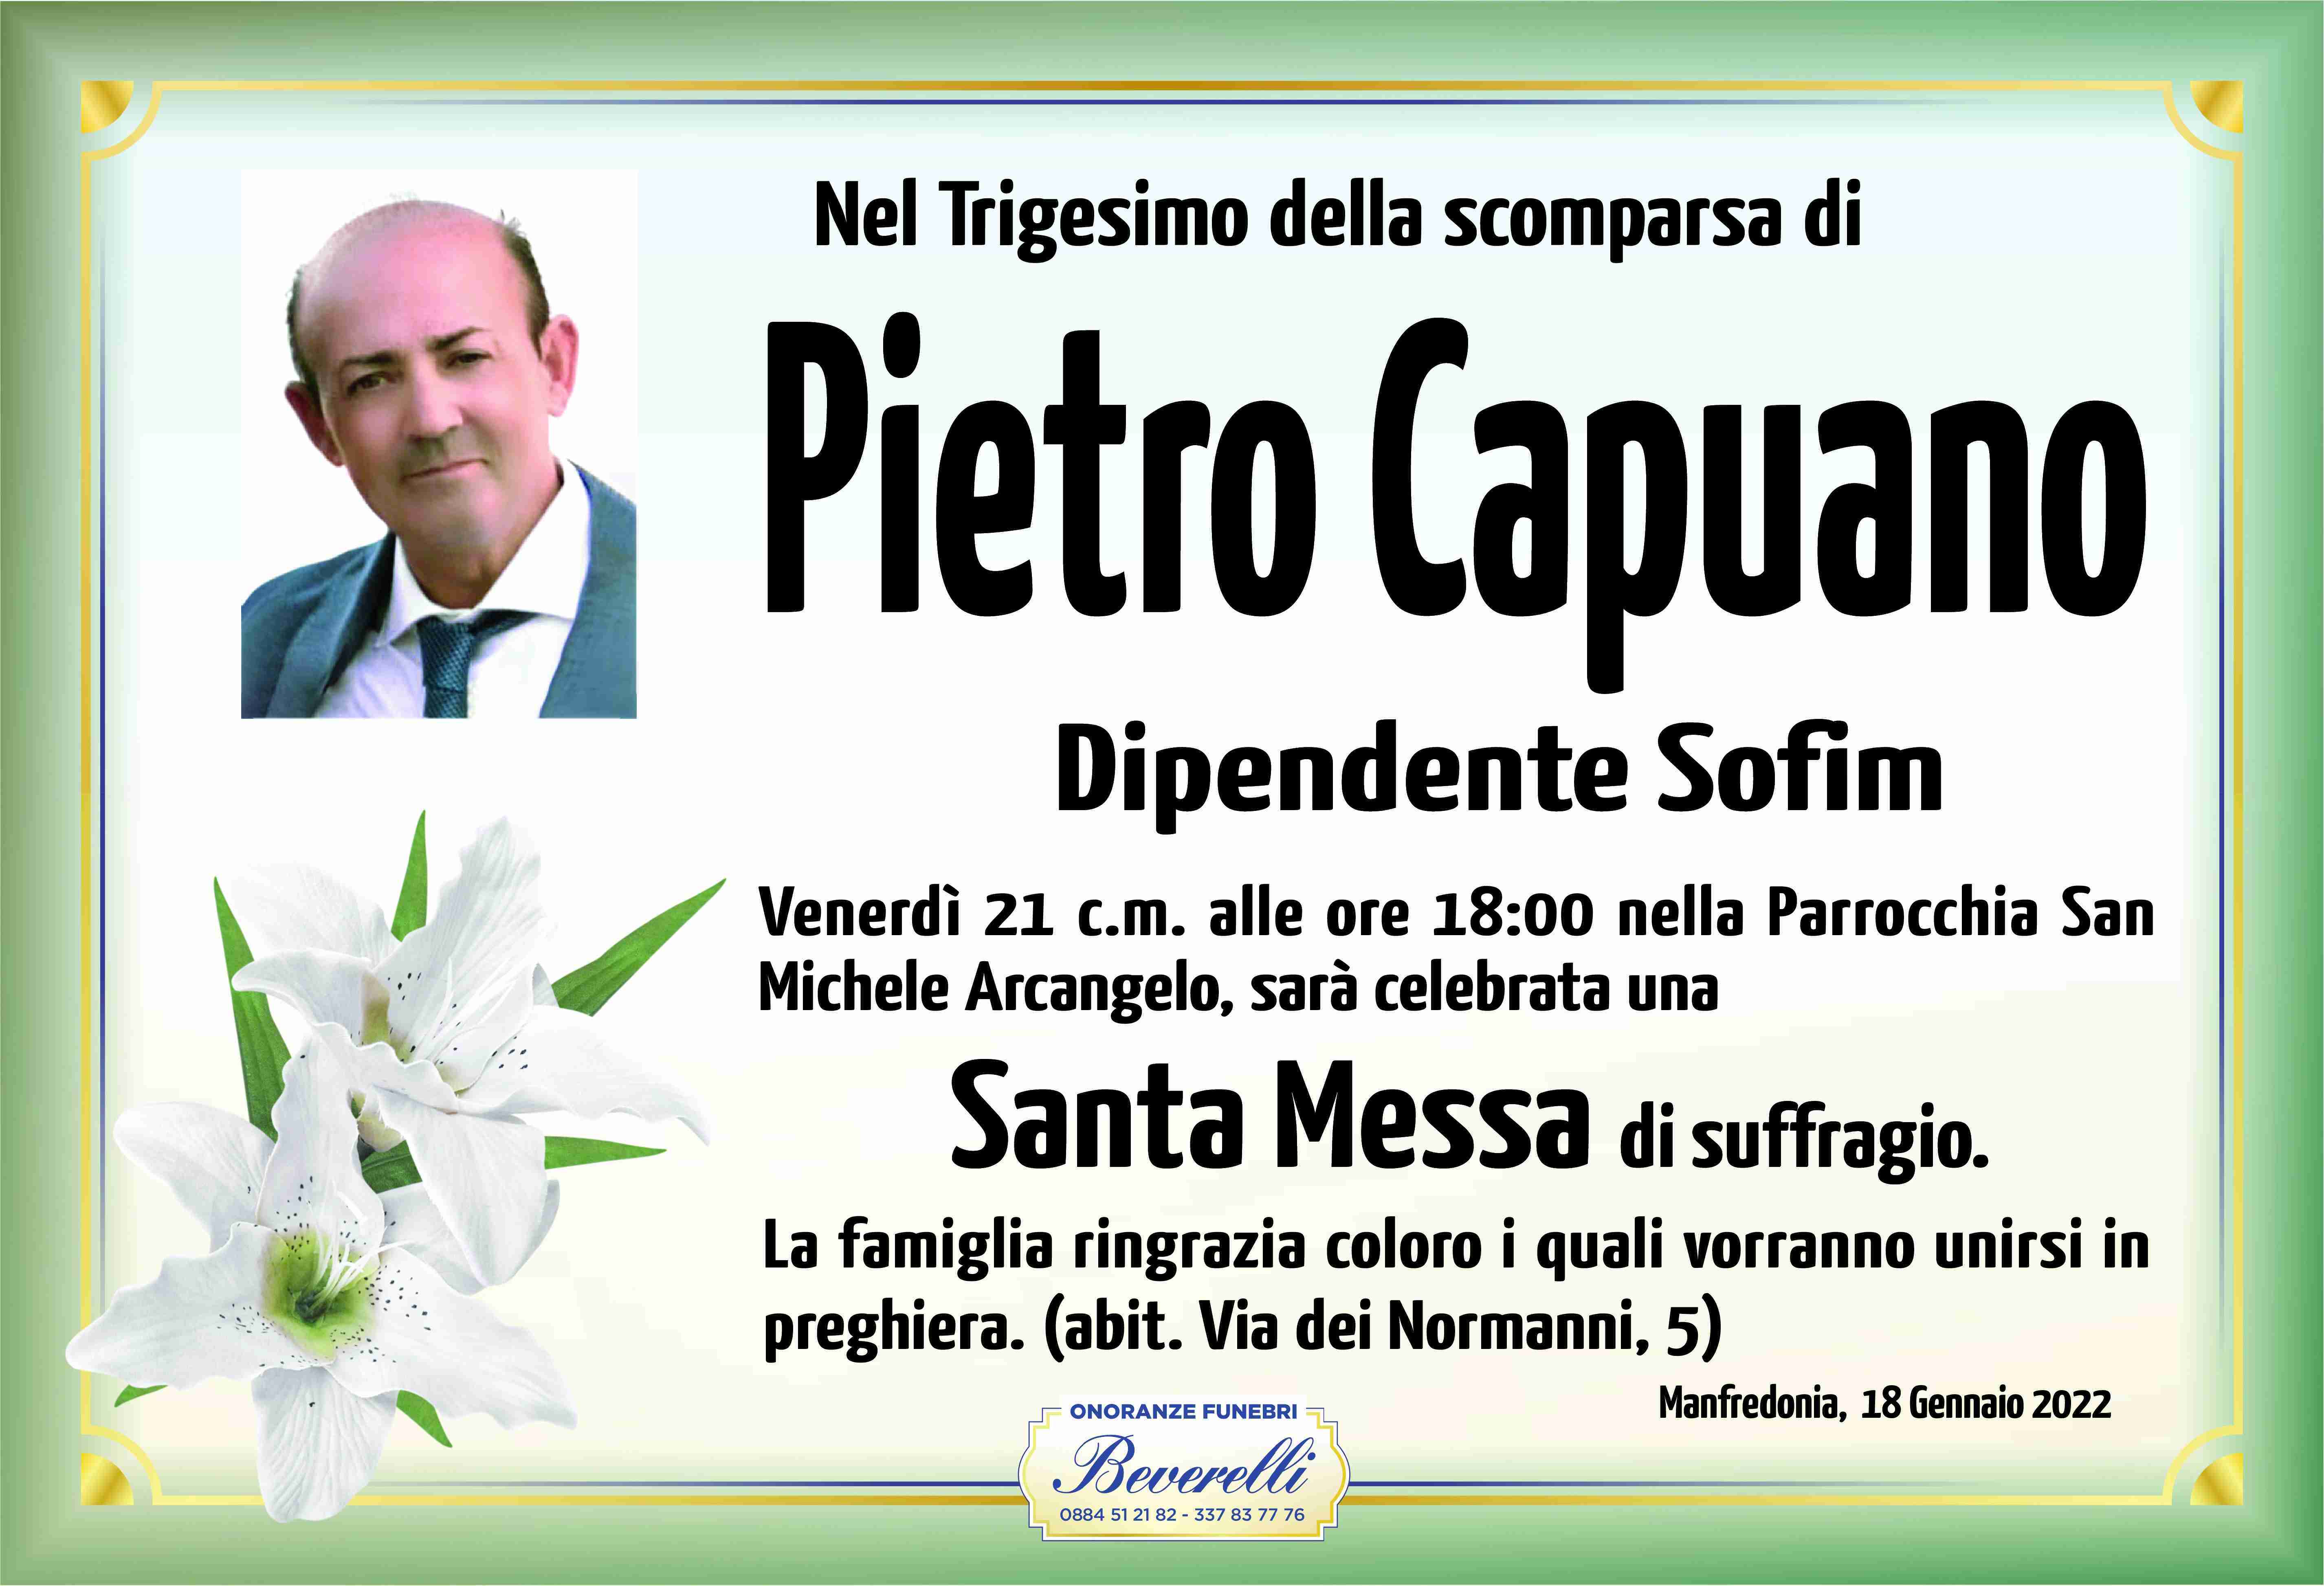 Pietro Capuano